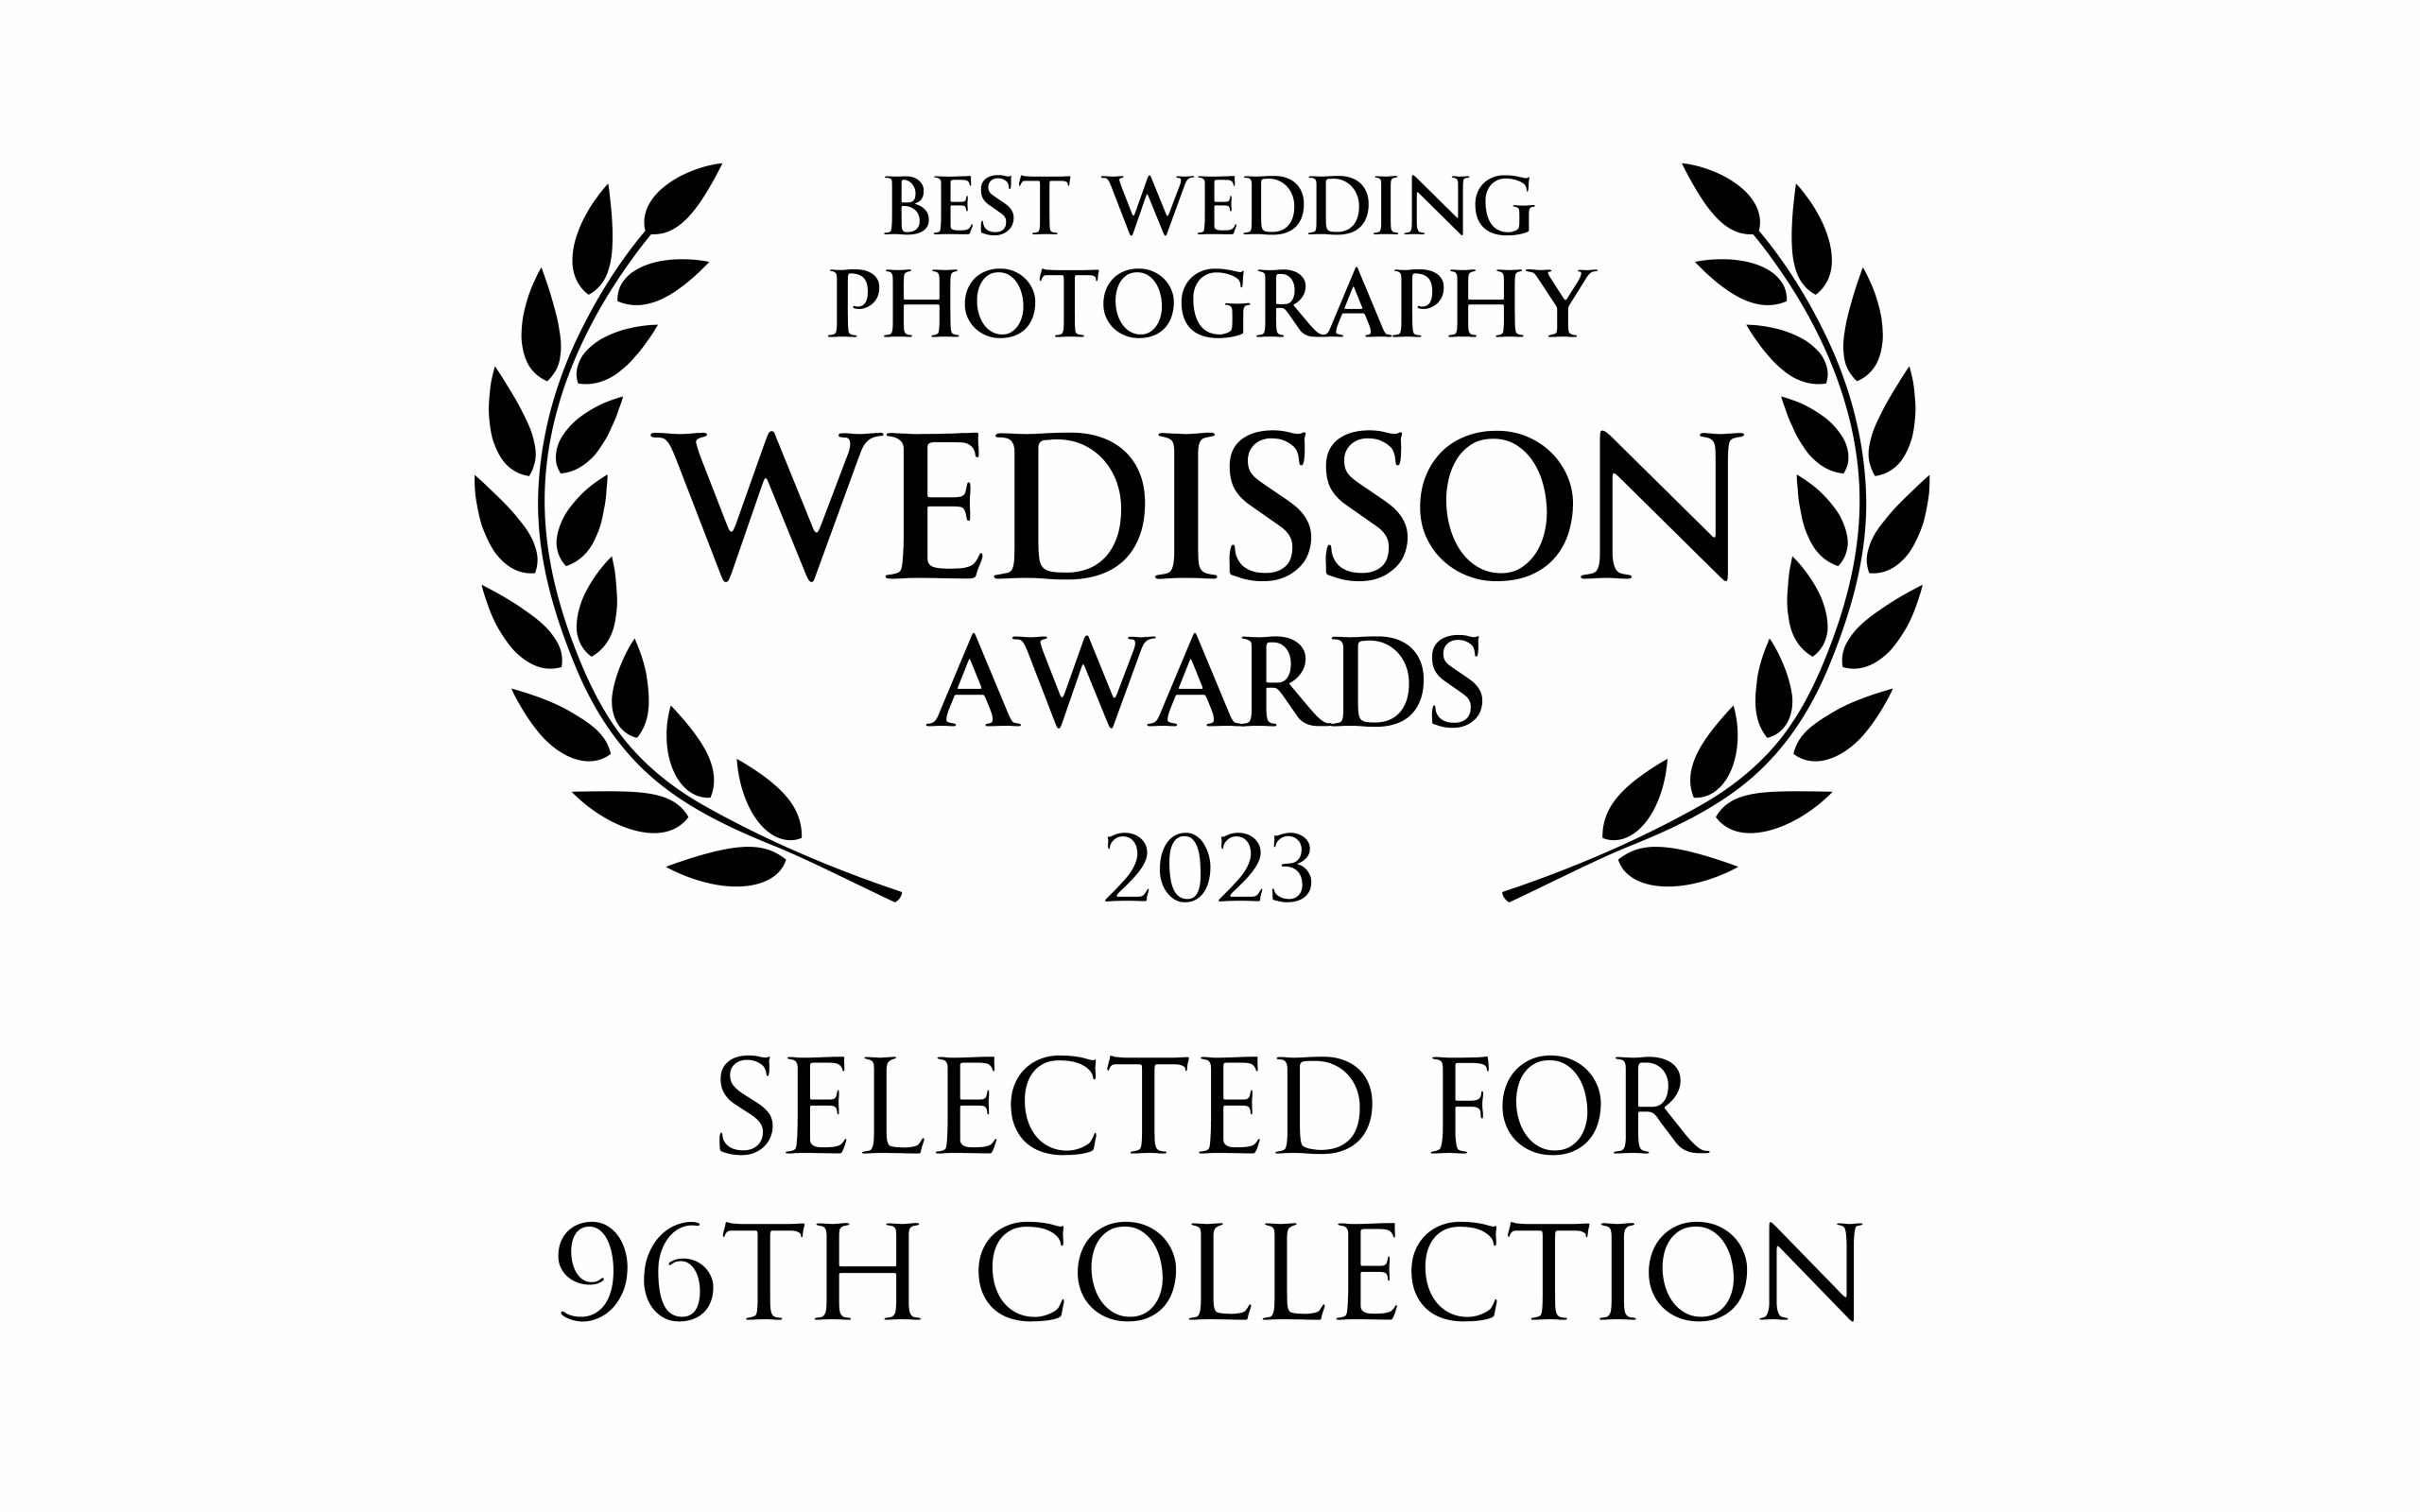 Wedisson Award 96th